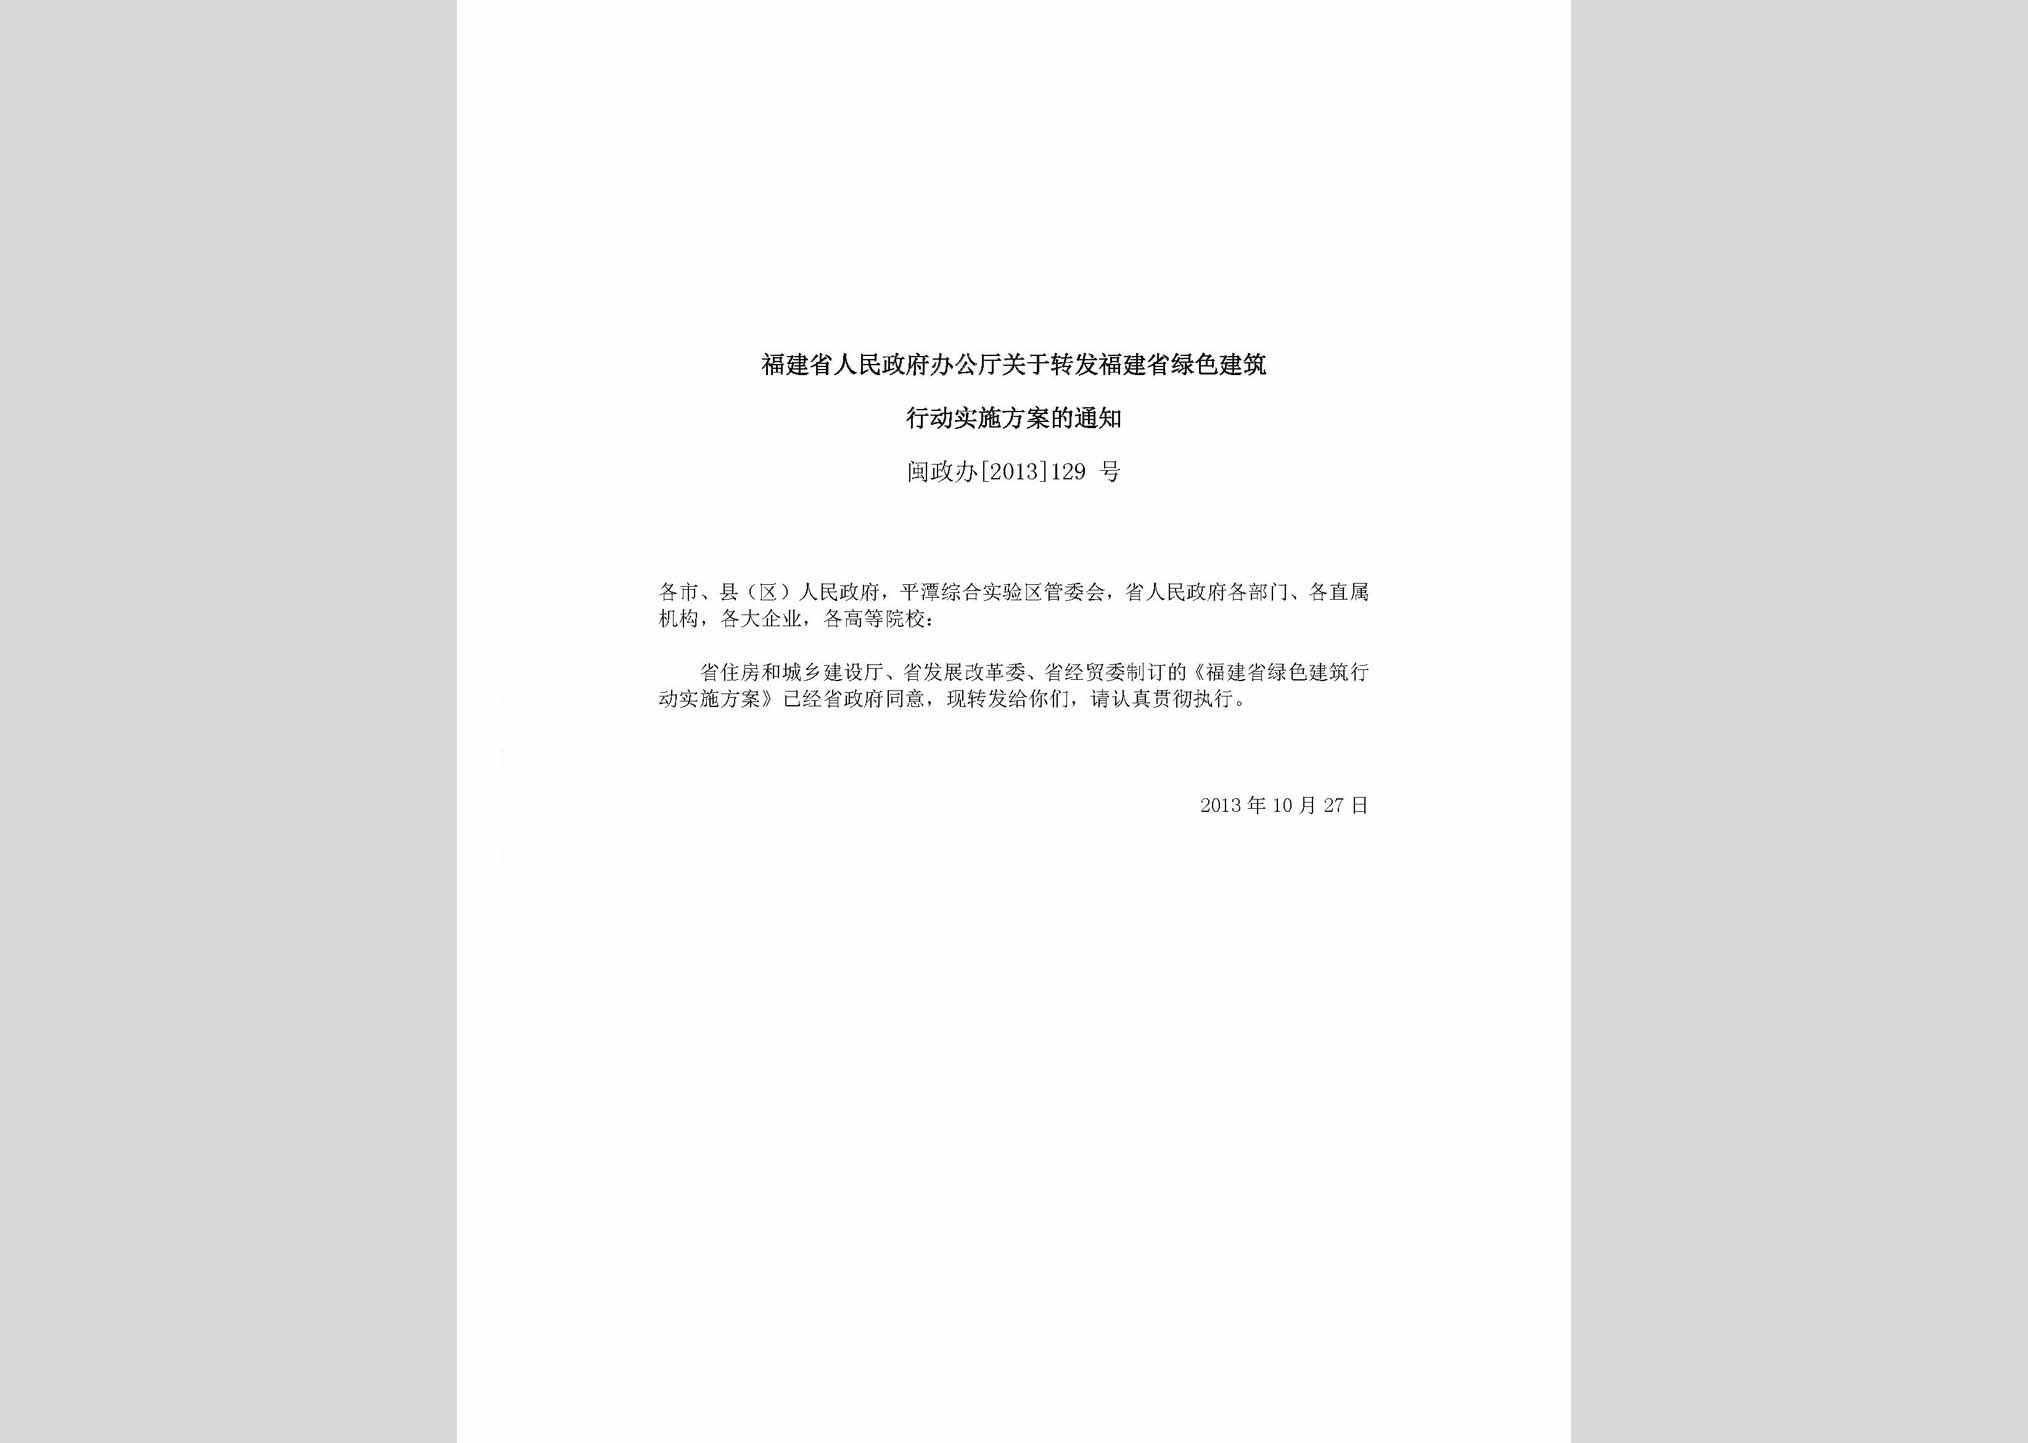 闽政办[2013]129号：福建省人民政府办公厅关于转发福建省绿色建筑行动实施方案的通知